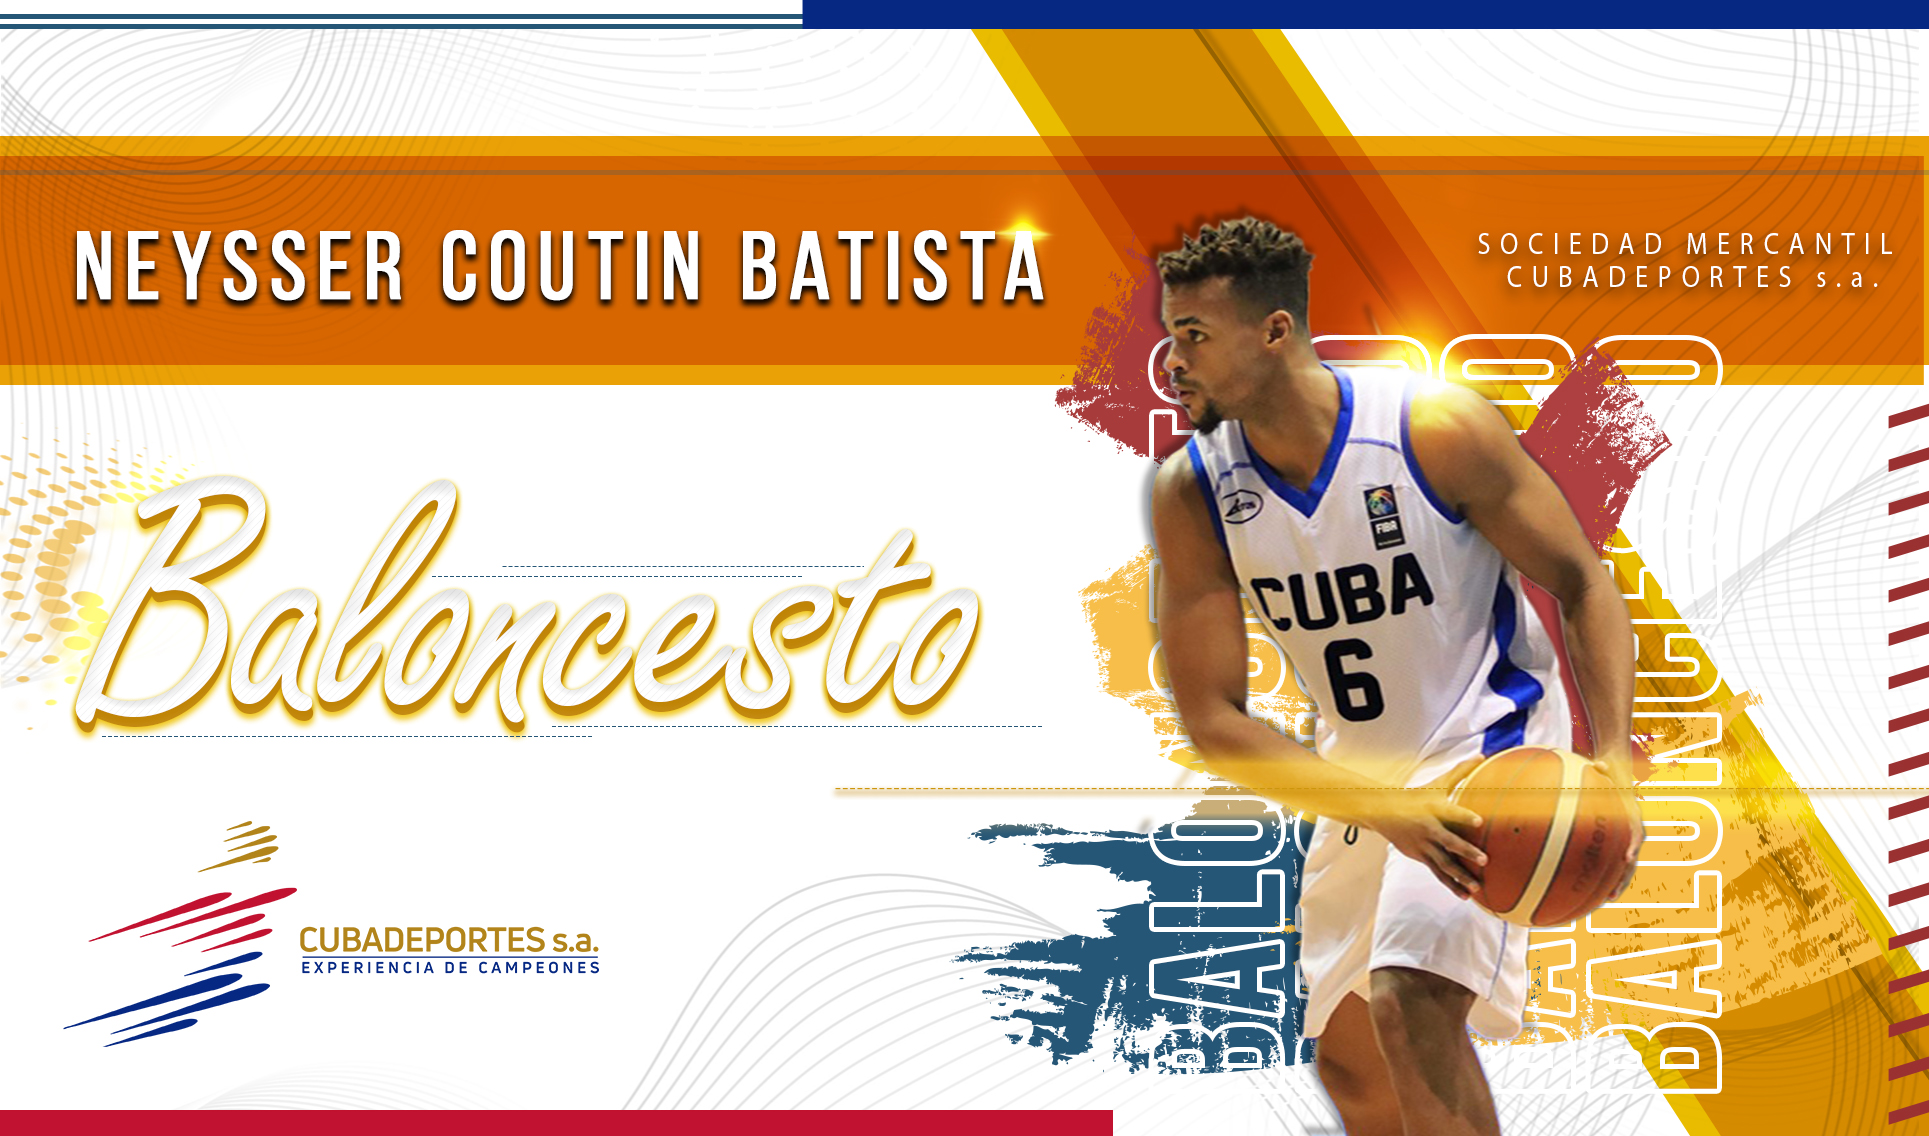 El Baloncesto cubano exportando talento